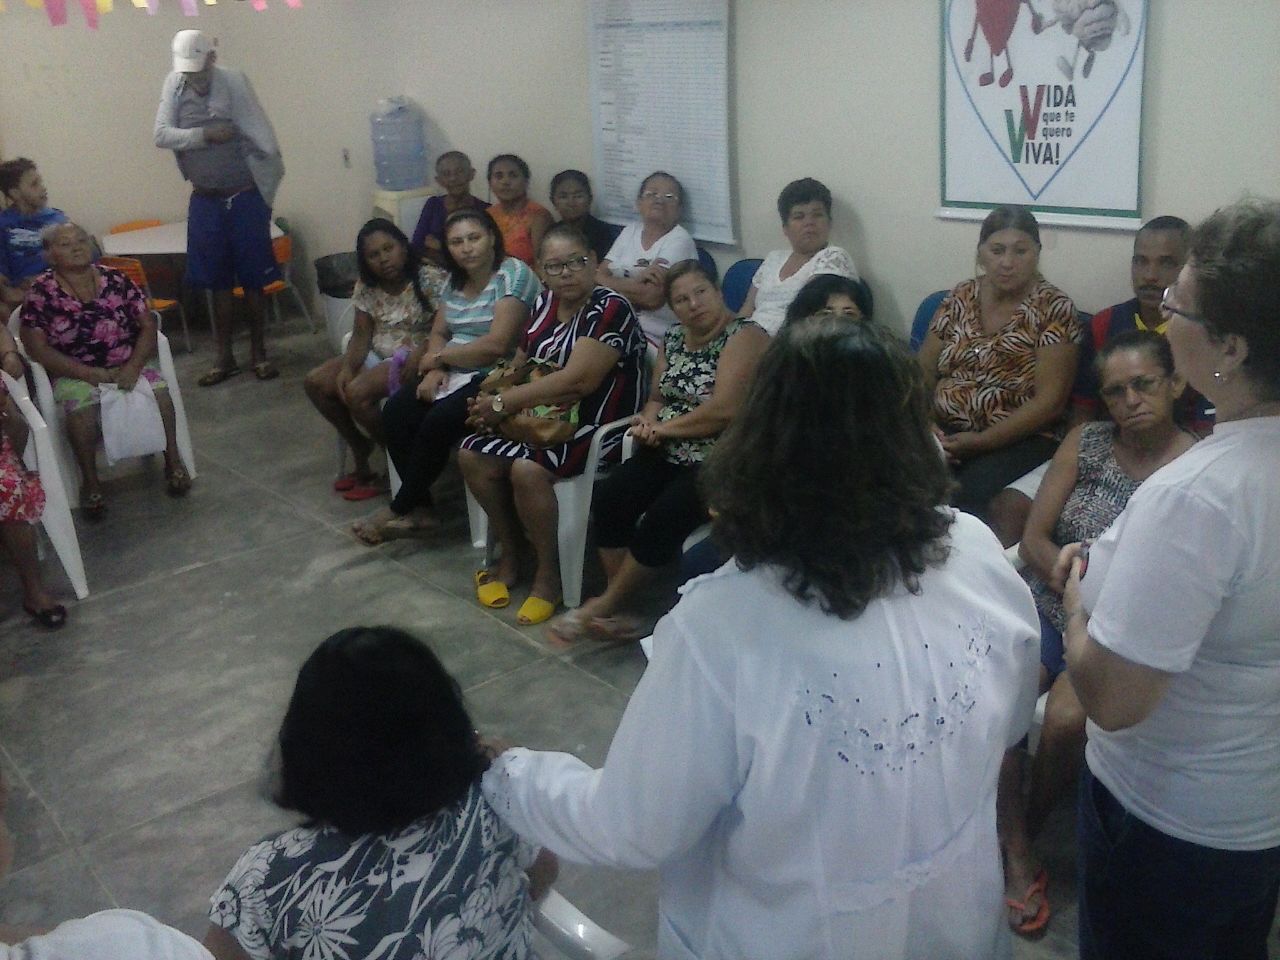 NATAL: Unidade de Saúde de Vale Dourado realiza encontro do Grupo Vida que te Quero Viva